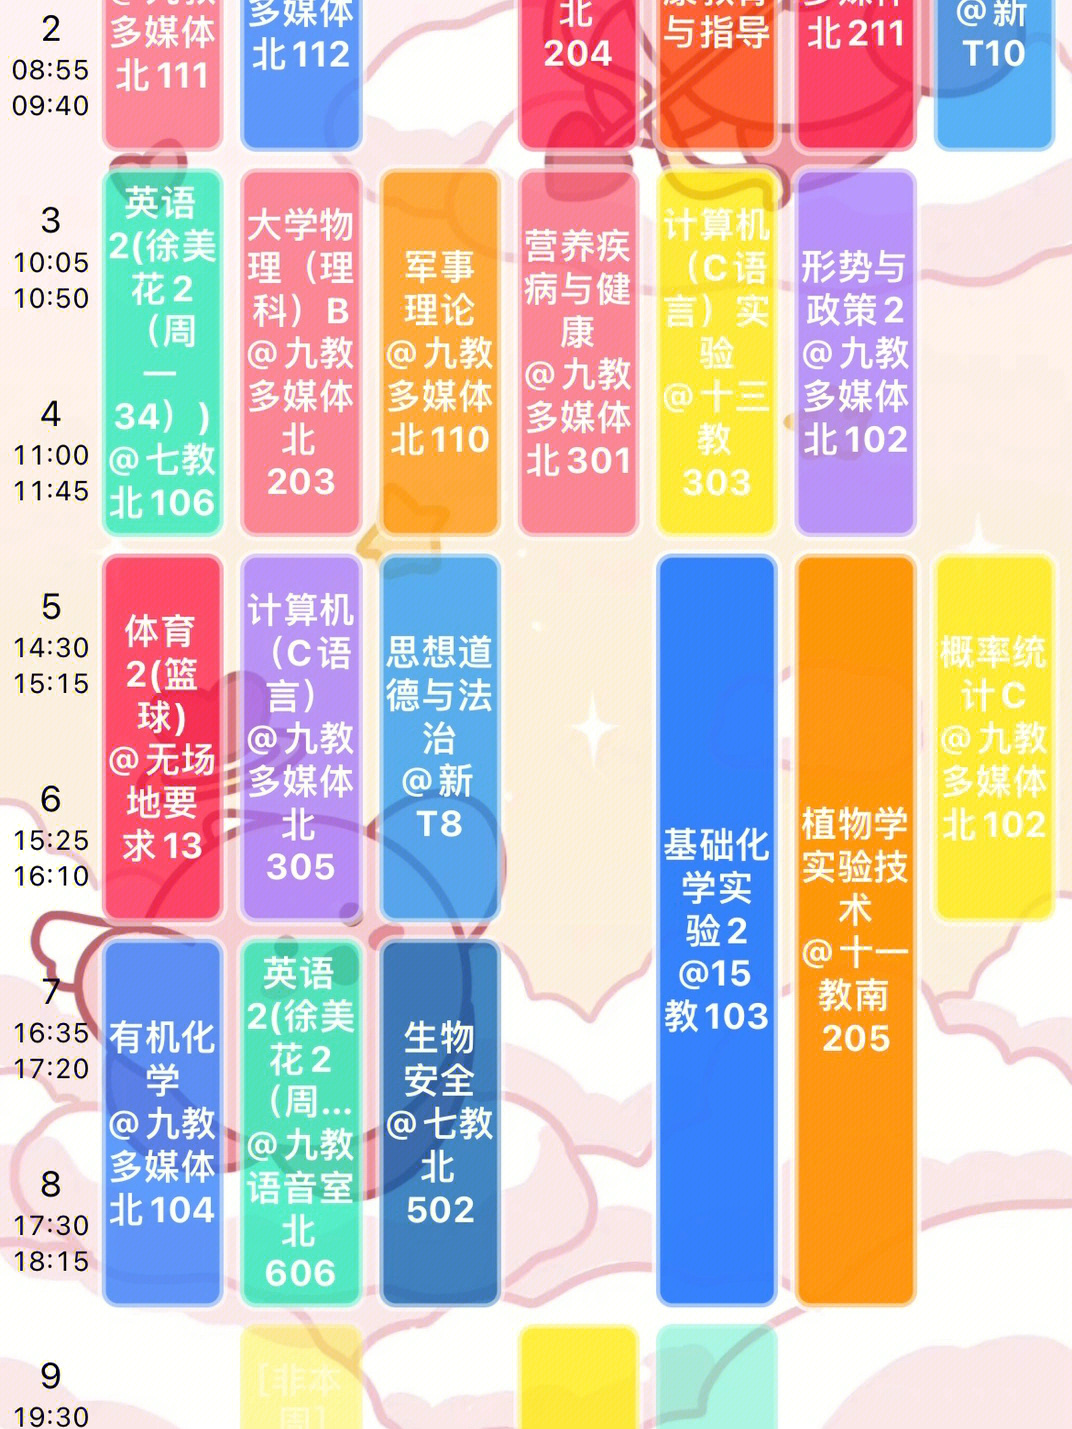 华为日历课程表图片